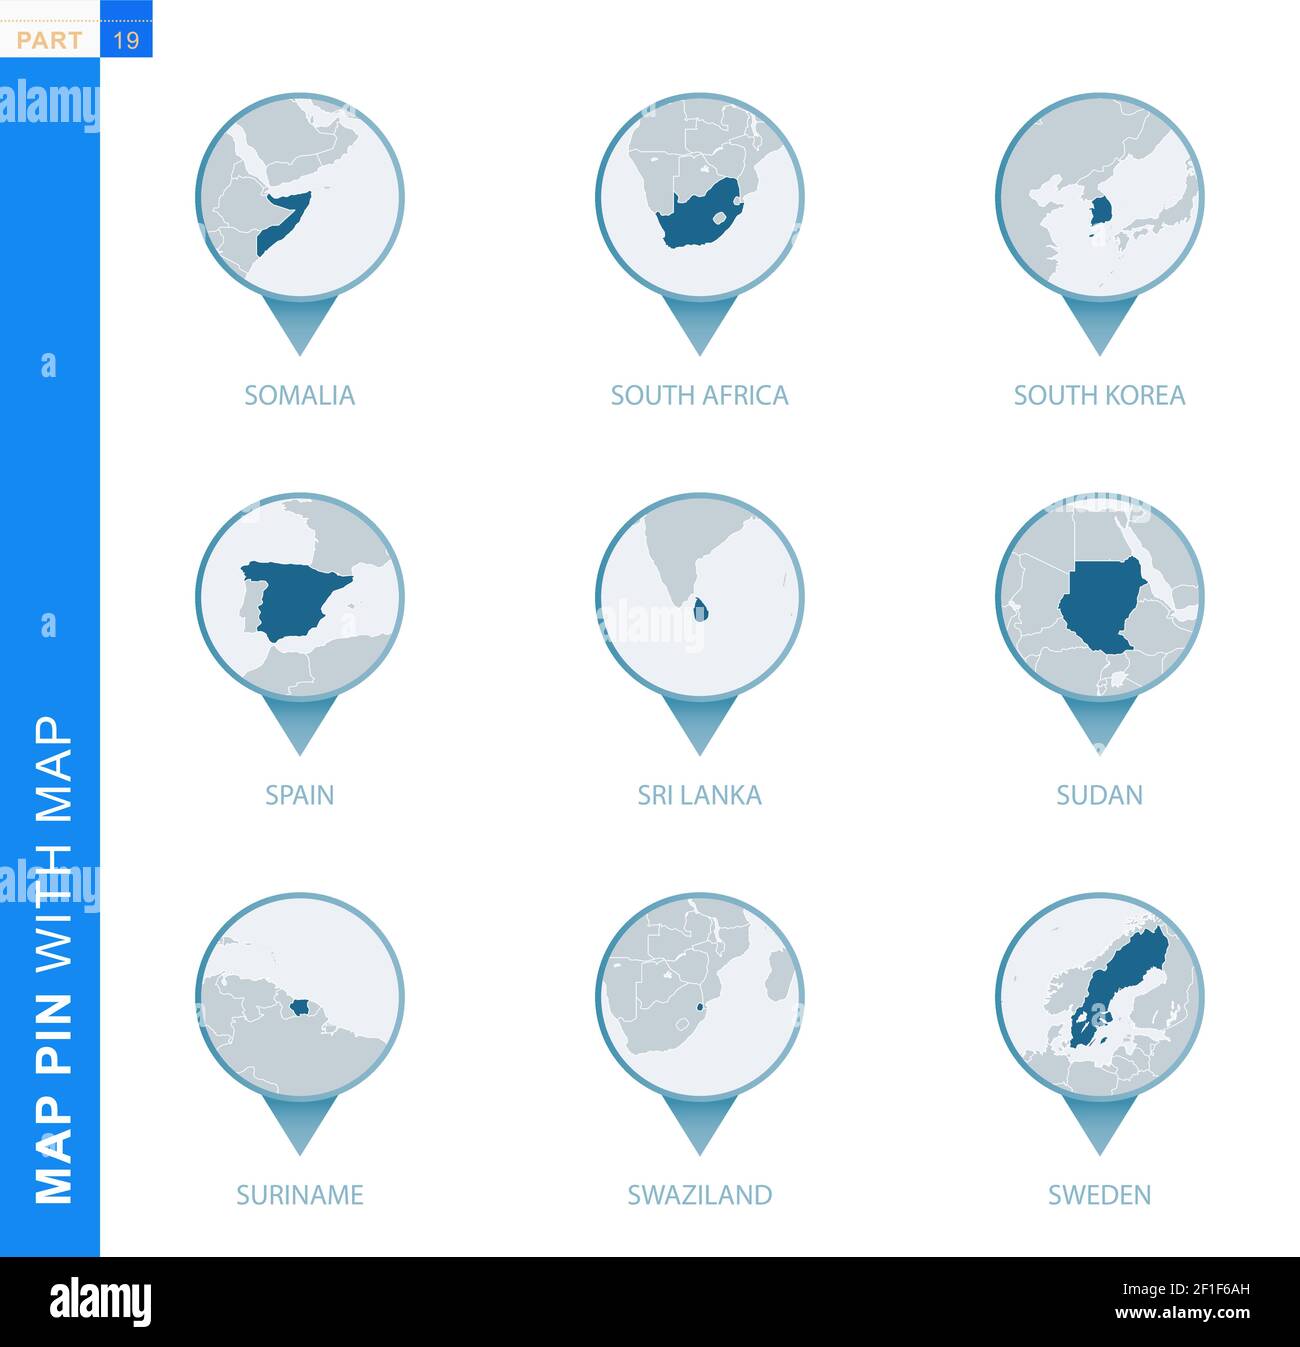 Raccolta di cartografia con mappa dettagliata e paesi vicini, 9 cartografia di Somalia, Sudafrica, Corea del Sud, Spagna, Sri Lanka, Sudan, Suriname Illustrazione Vettoriale